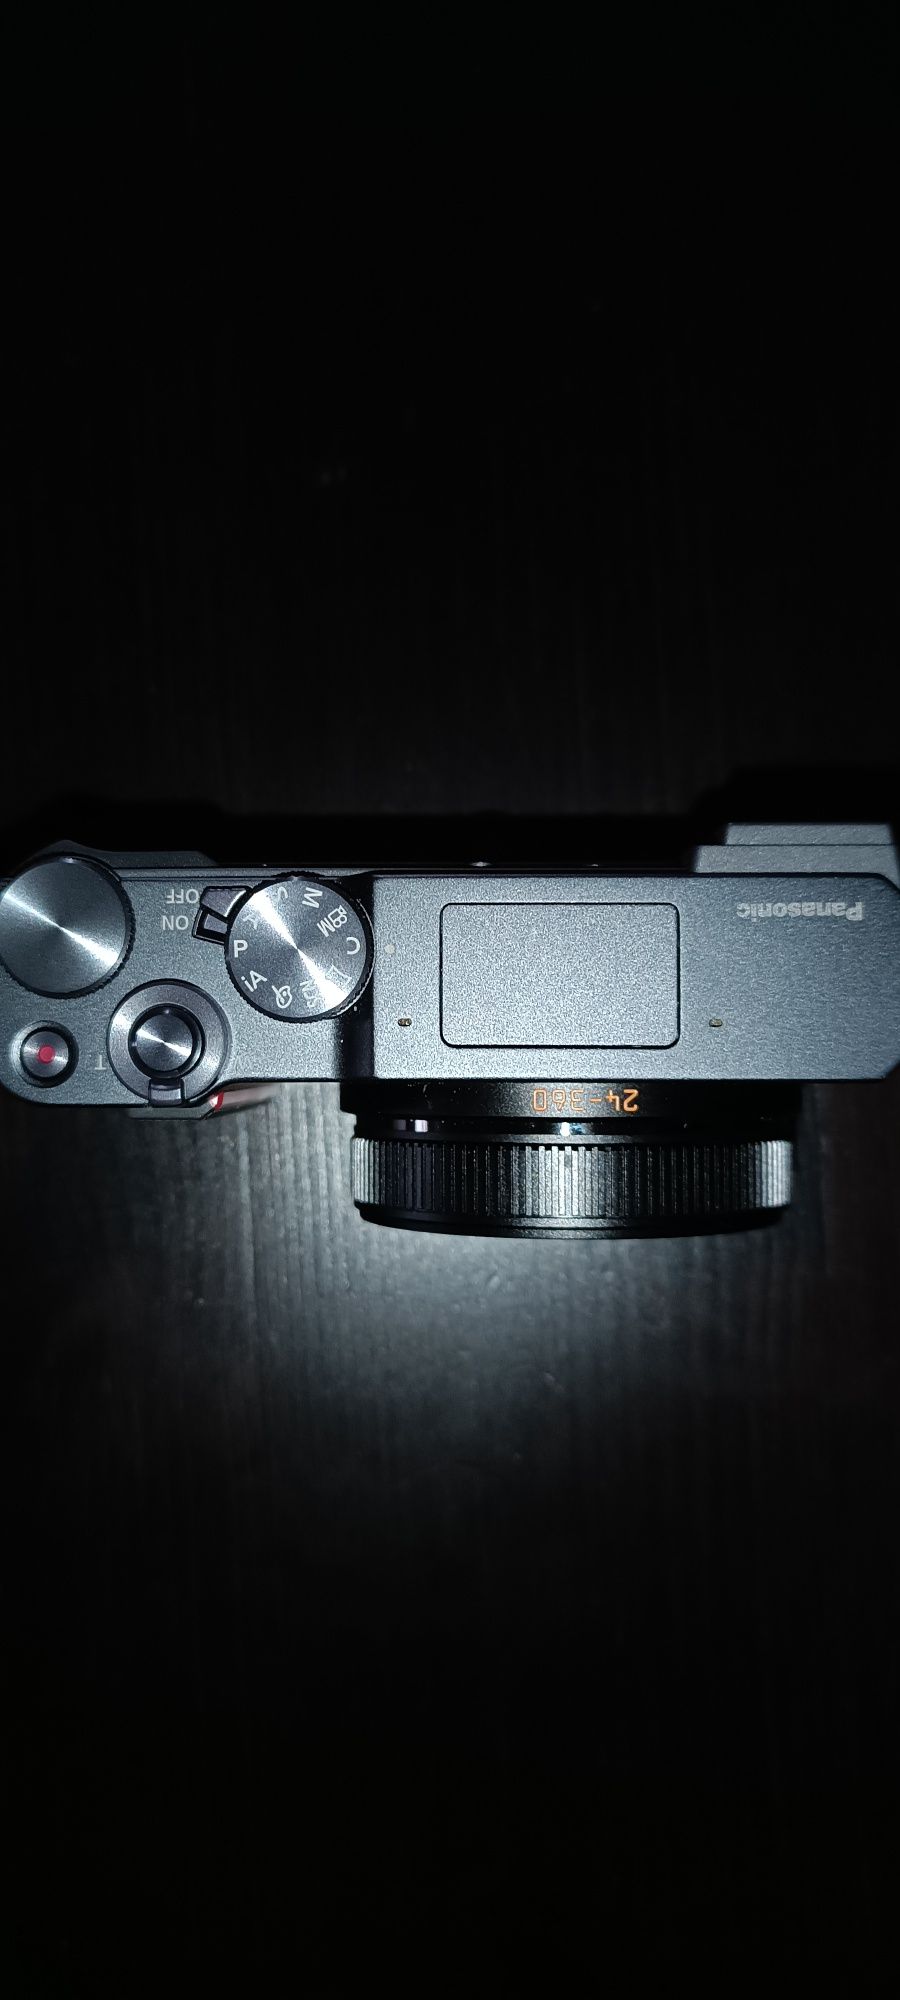 Máquina fotográfica Panasonic Lumix Leica DC-TZ 220